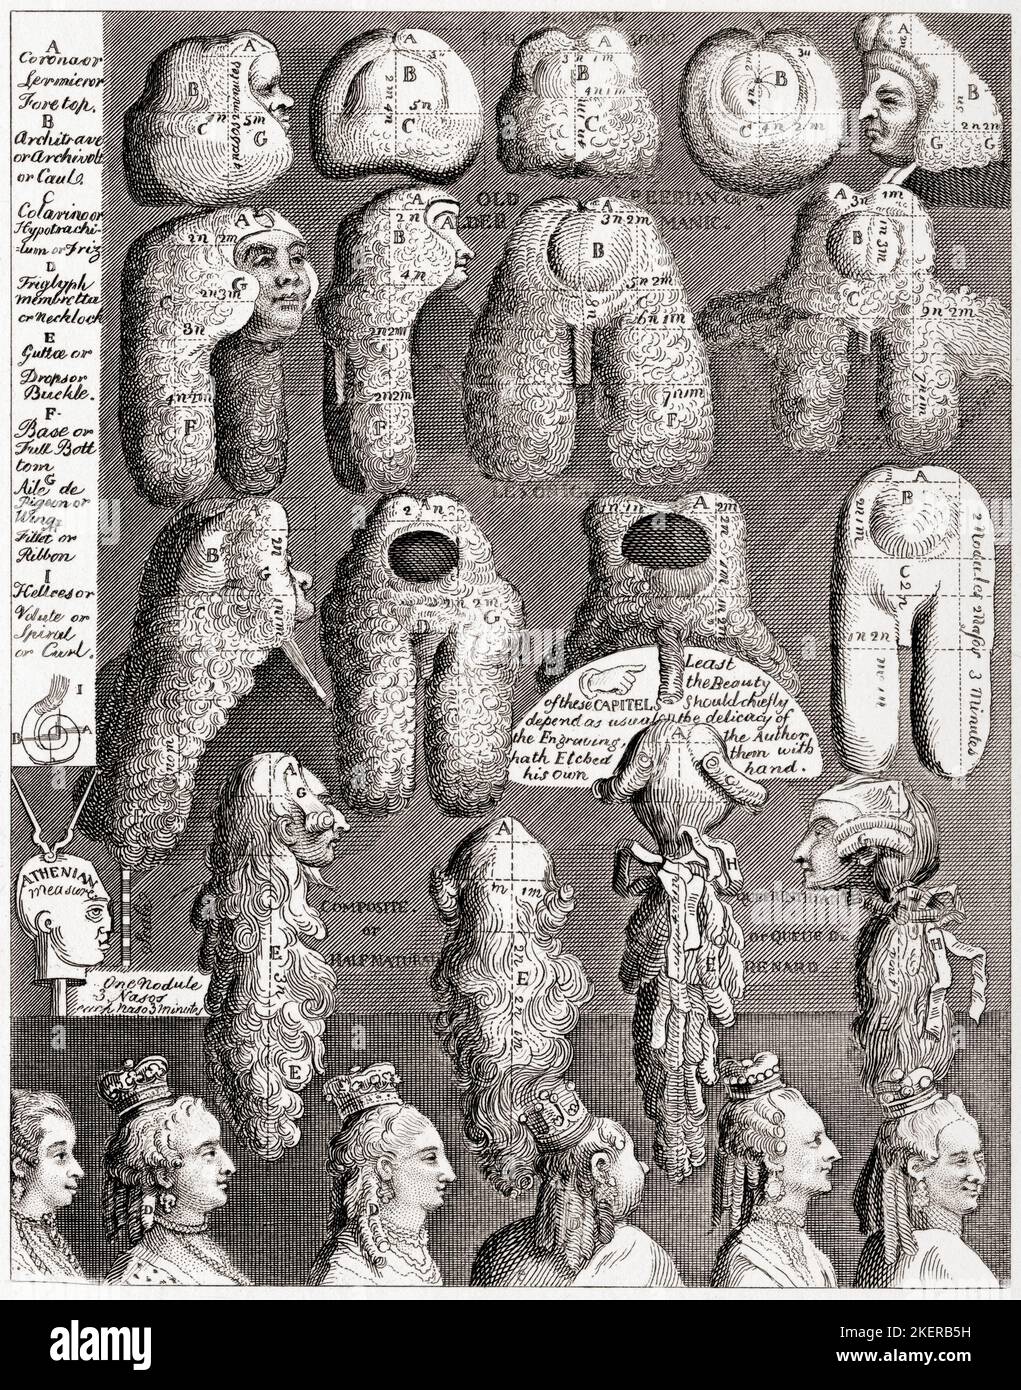 Las Cinco Órdenes de Perriwigs. De The Works of Hogarth publicado en Londres en 1833. Foto de stock